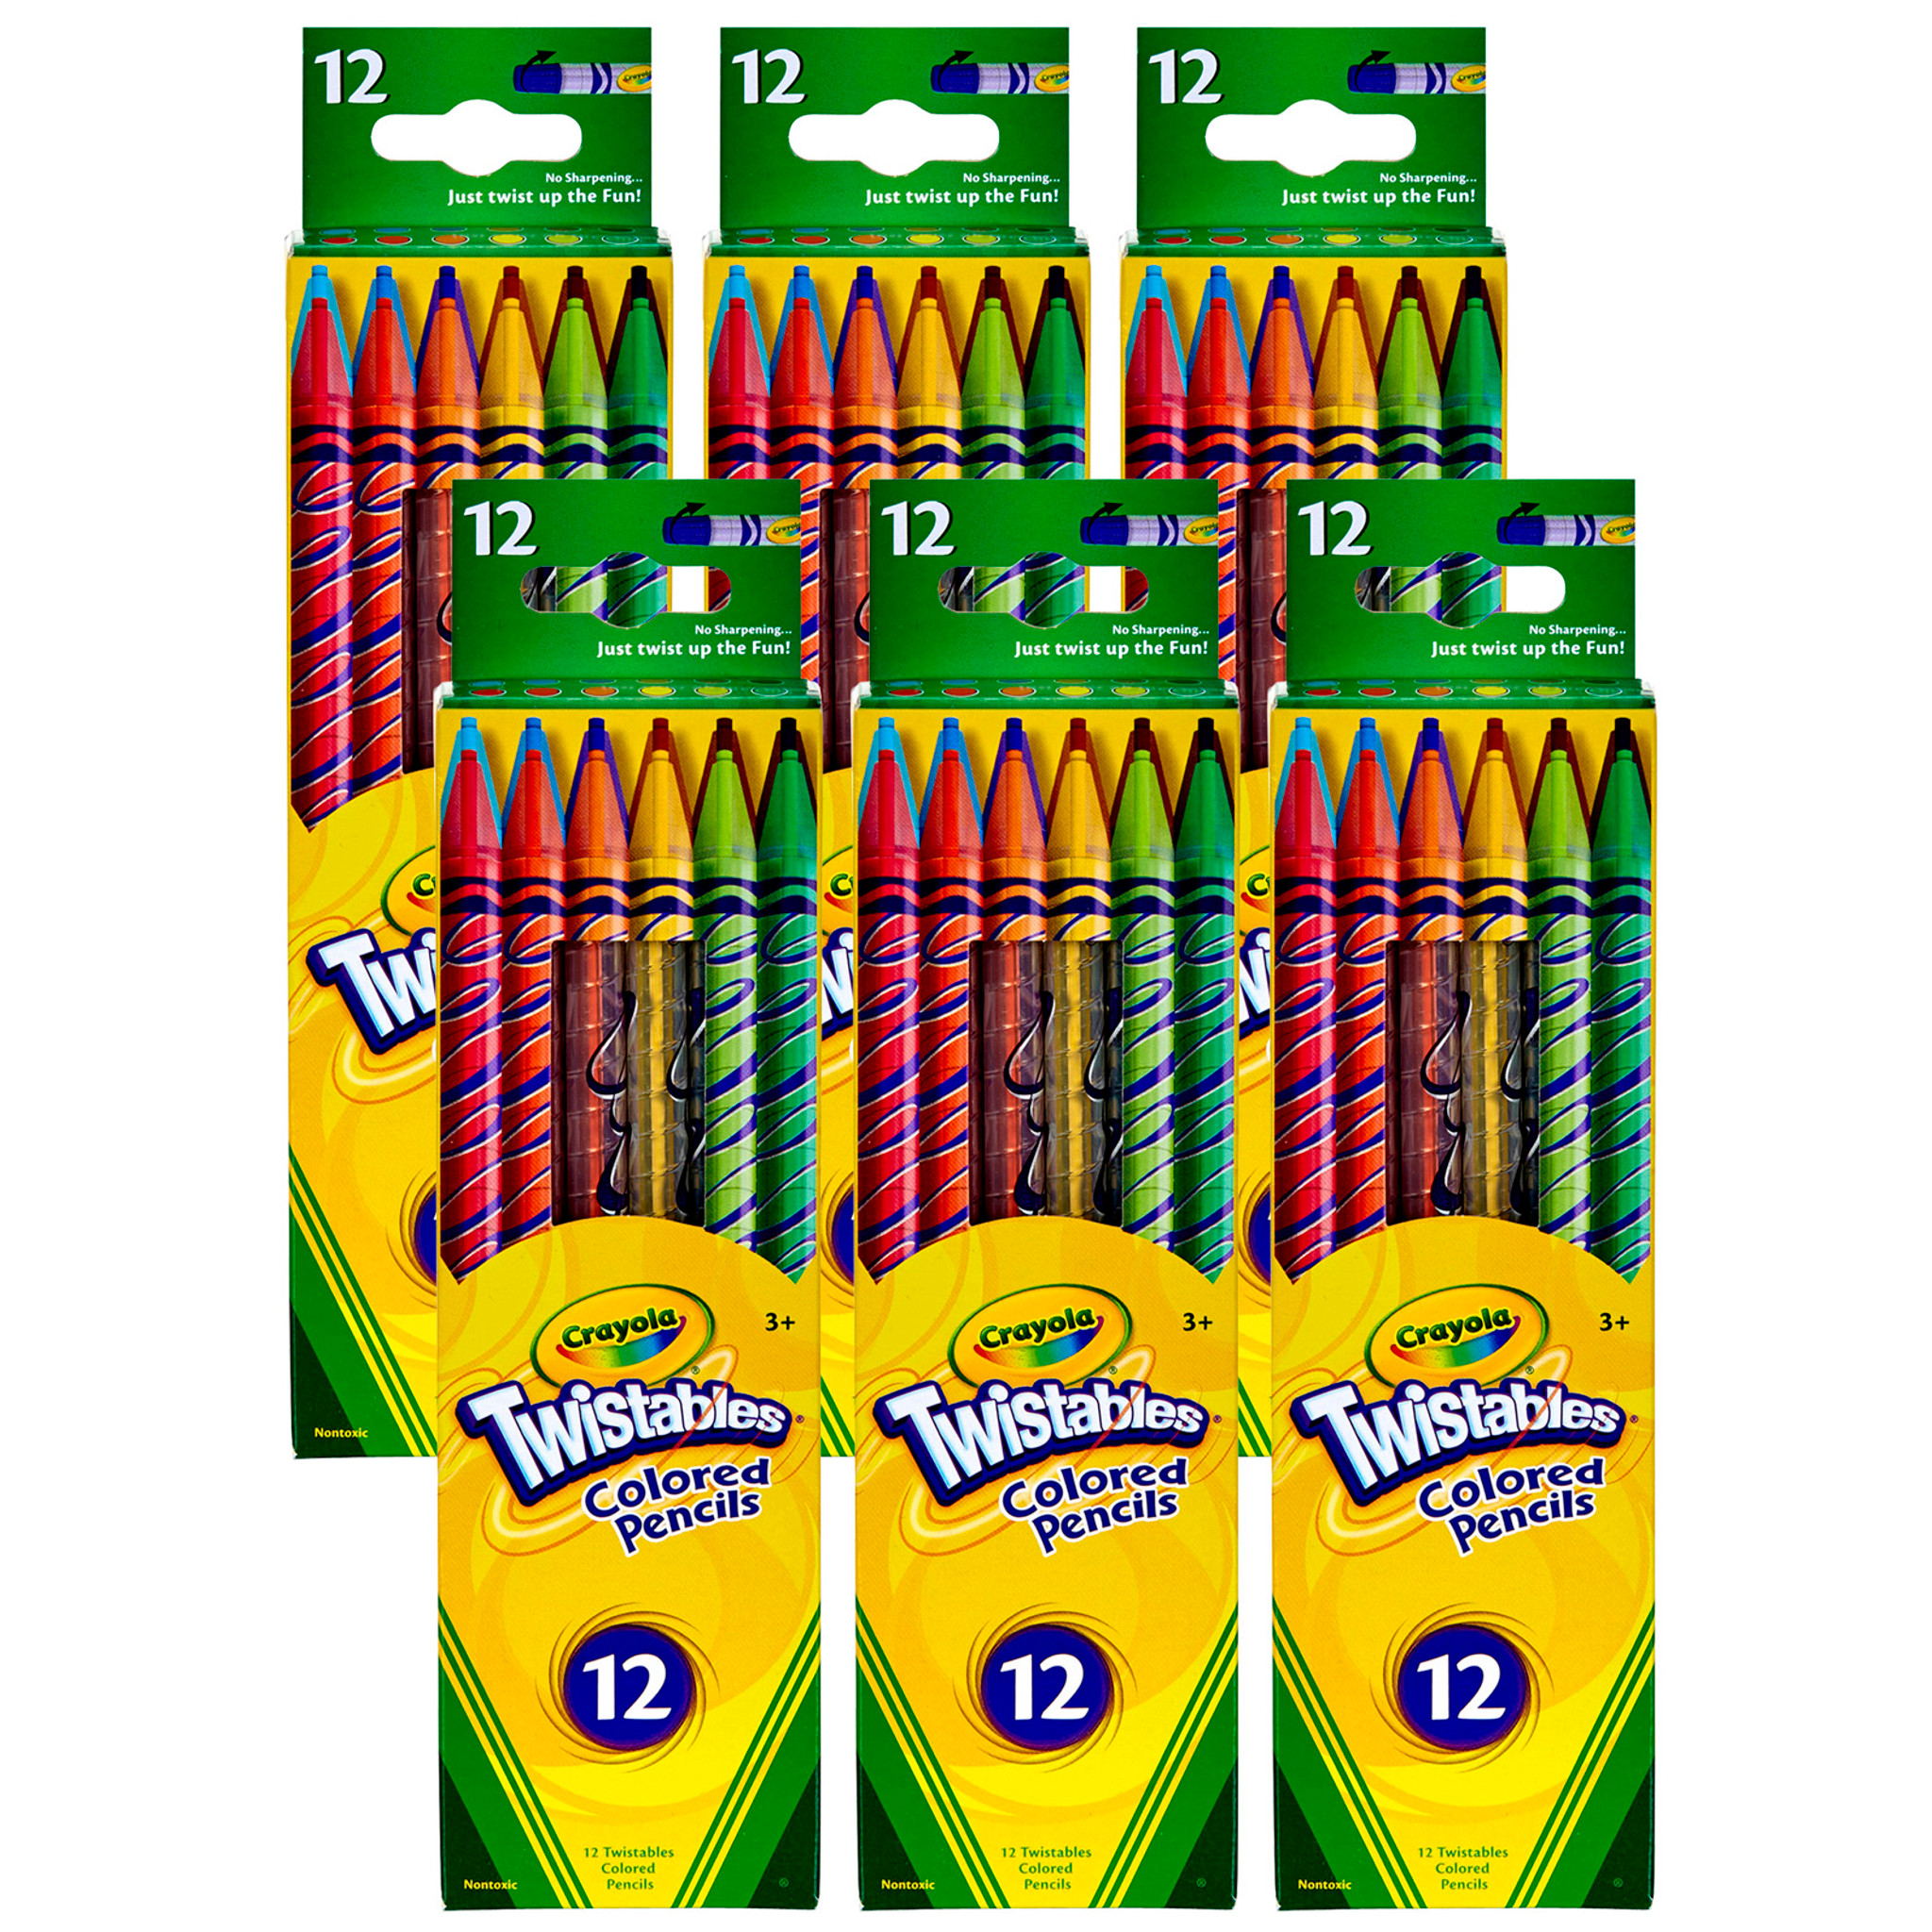 Crayola Erasable Colored Pencils, 12 Per Box, 6 Boxes